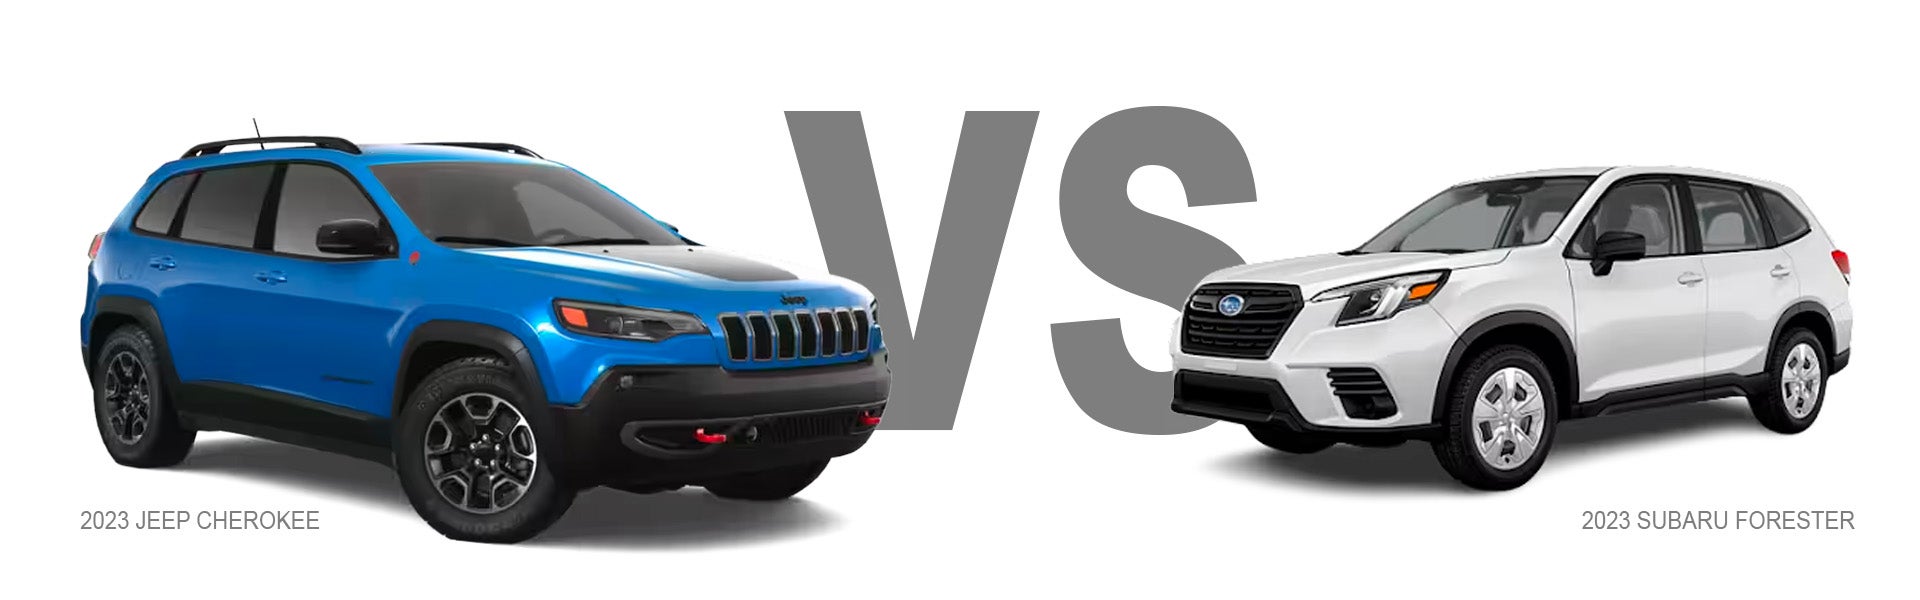 Jeep Compass vs Subaru Forester Compact CUV Comparison